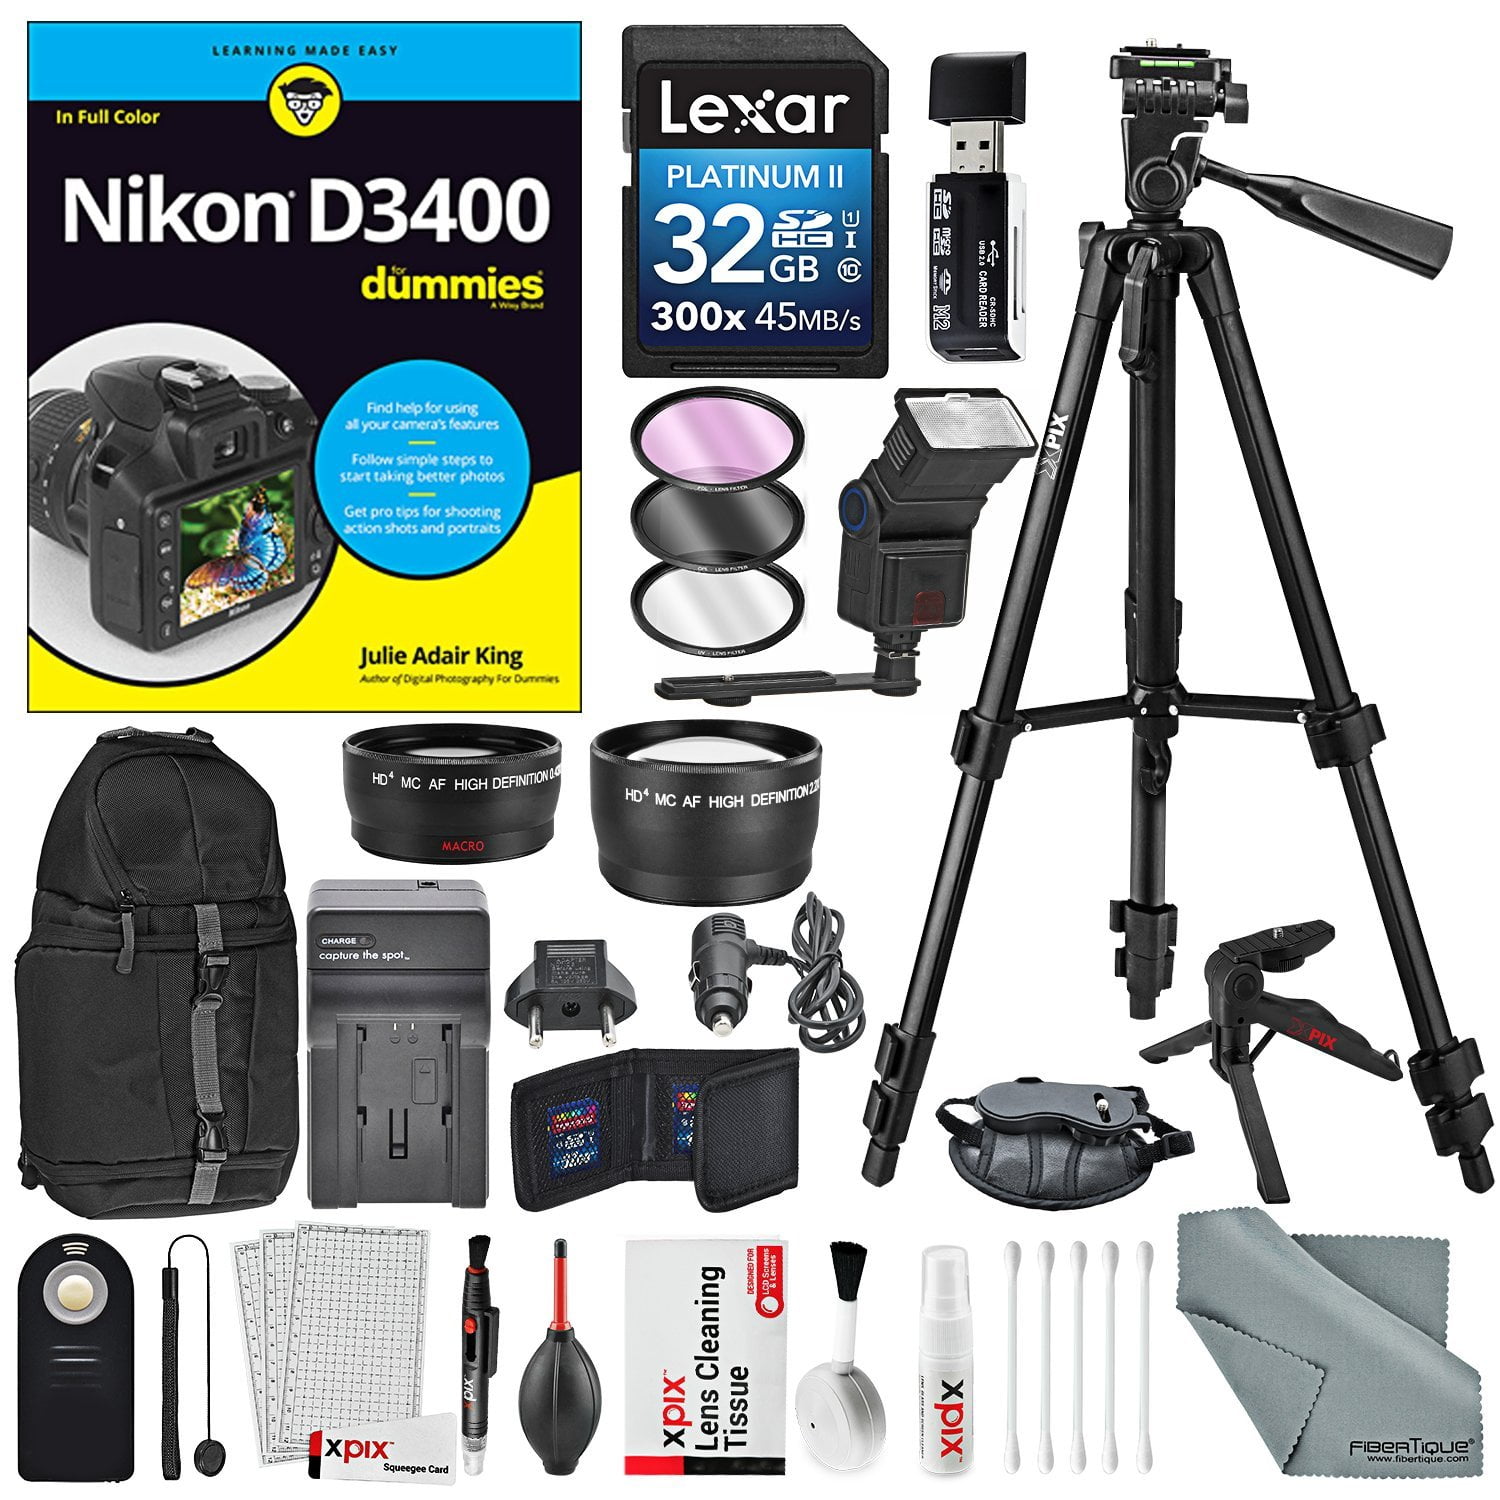 Nikon D3400 for Dummies + Deluxe Accessory Bundle with Xpix Tripods, Lenses, Filters, DSLR Remote, Xpix Cleaning Kit - Walmart.com